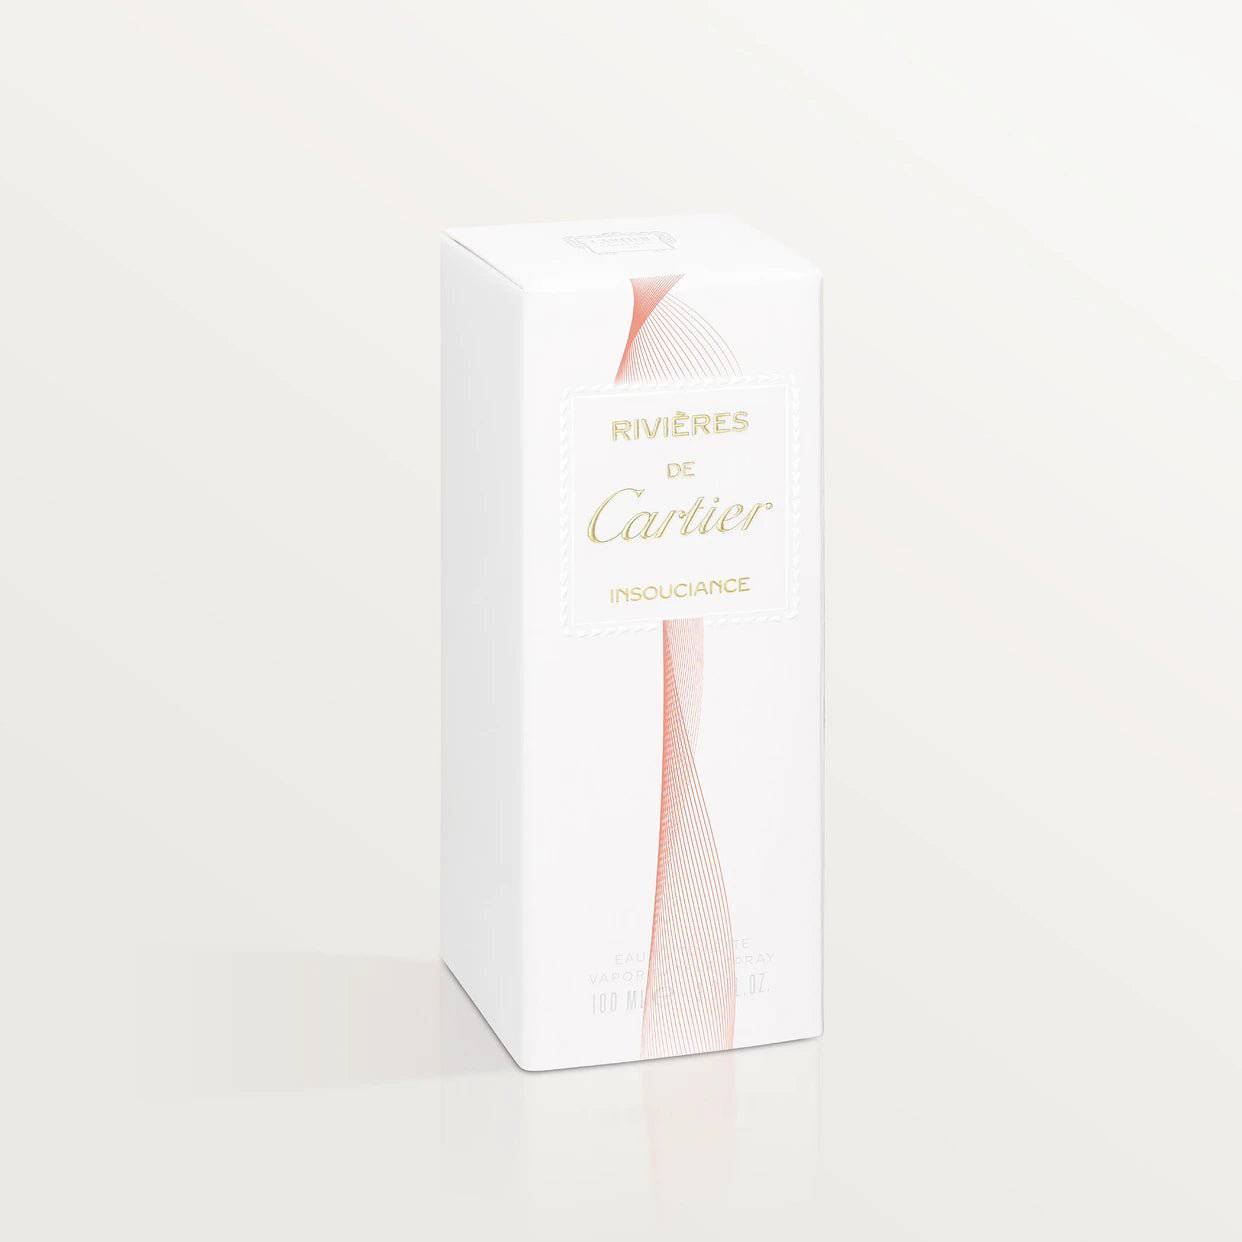 Cartier Rivières de Cartier Insouciance - Jasmine Parfums- [ean]